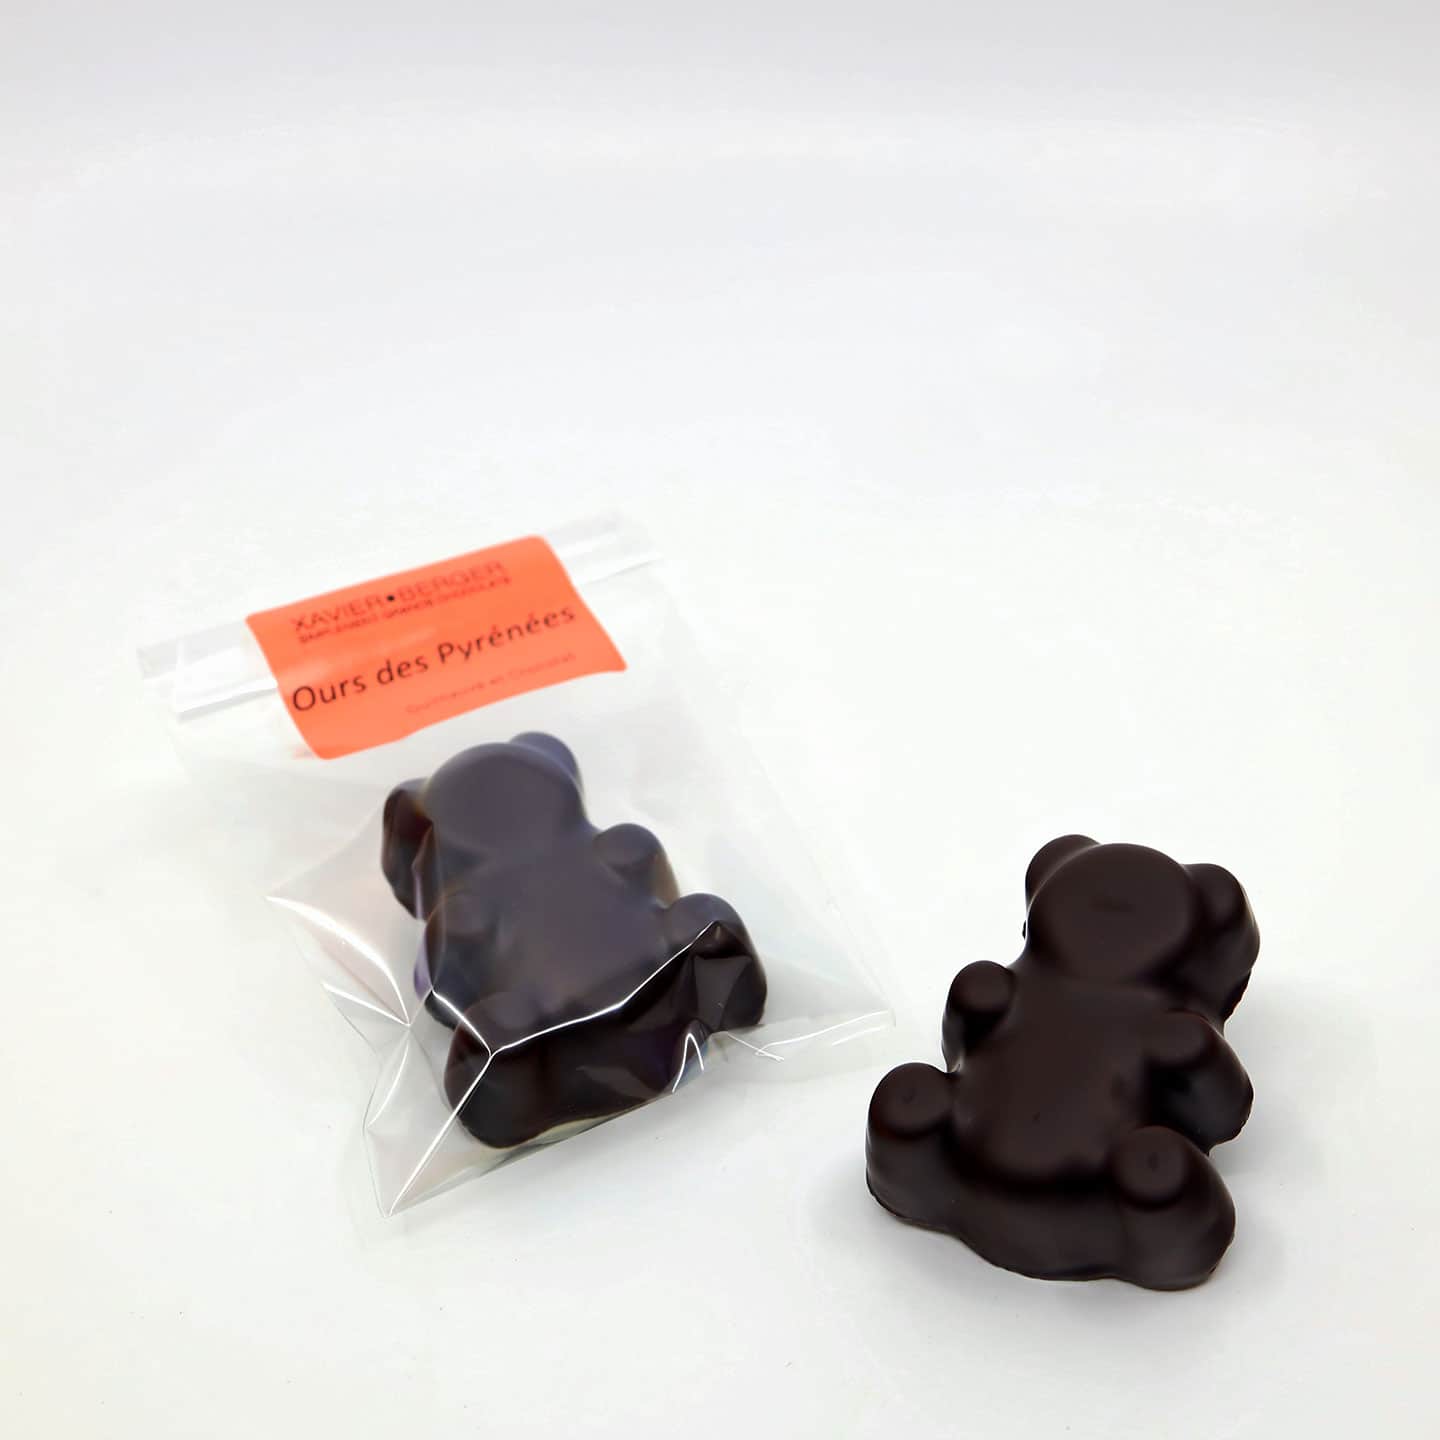 Guimauve enrobée Chocolat Noir 24g - 1 pièce Ours des Pyrénées